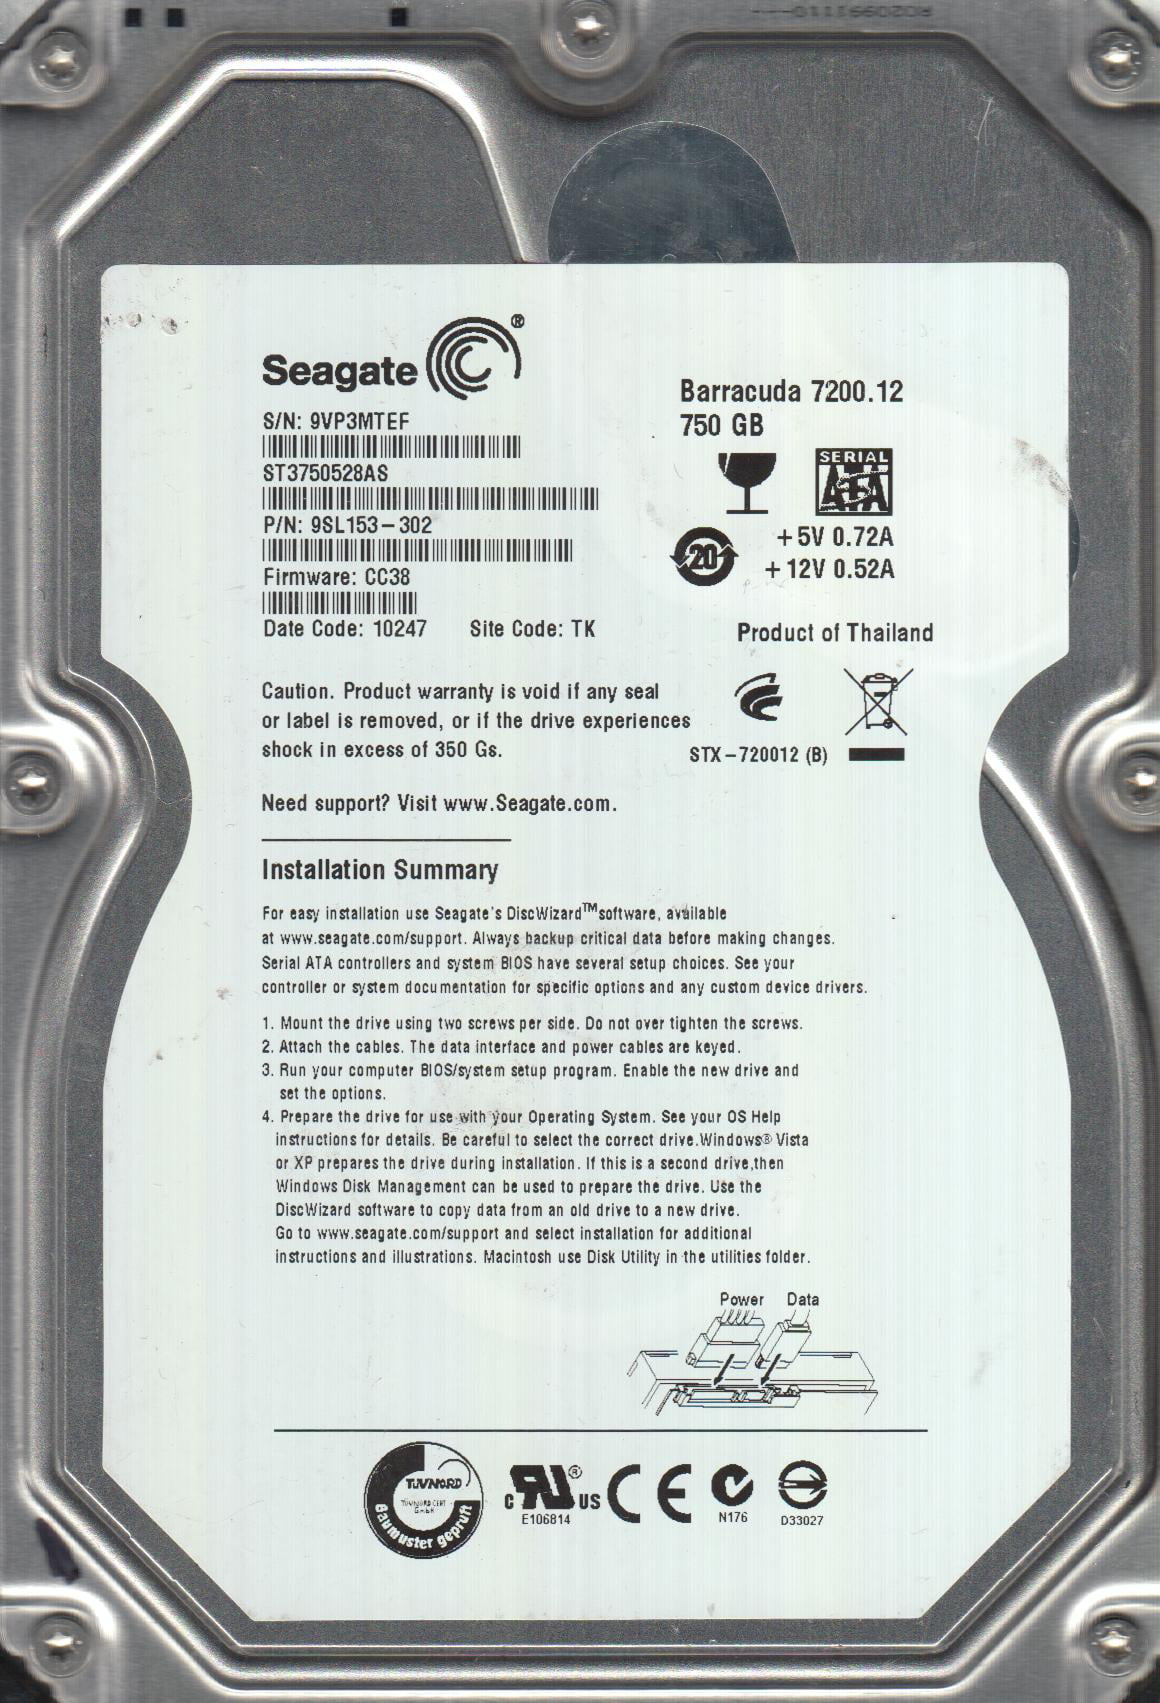 Seagate 250GB SATA 3.5 Hard Drive FW CC45 TK ST3250318AS 9VM PN 9SL131-034